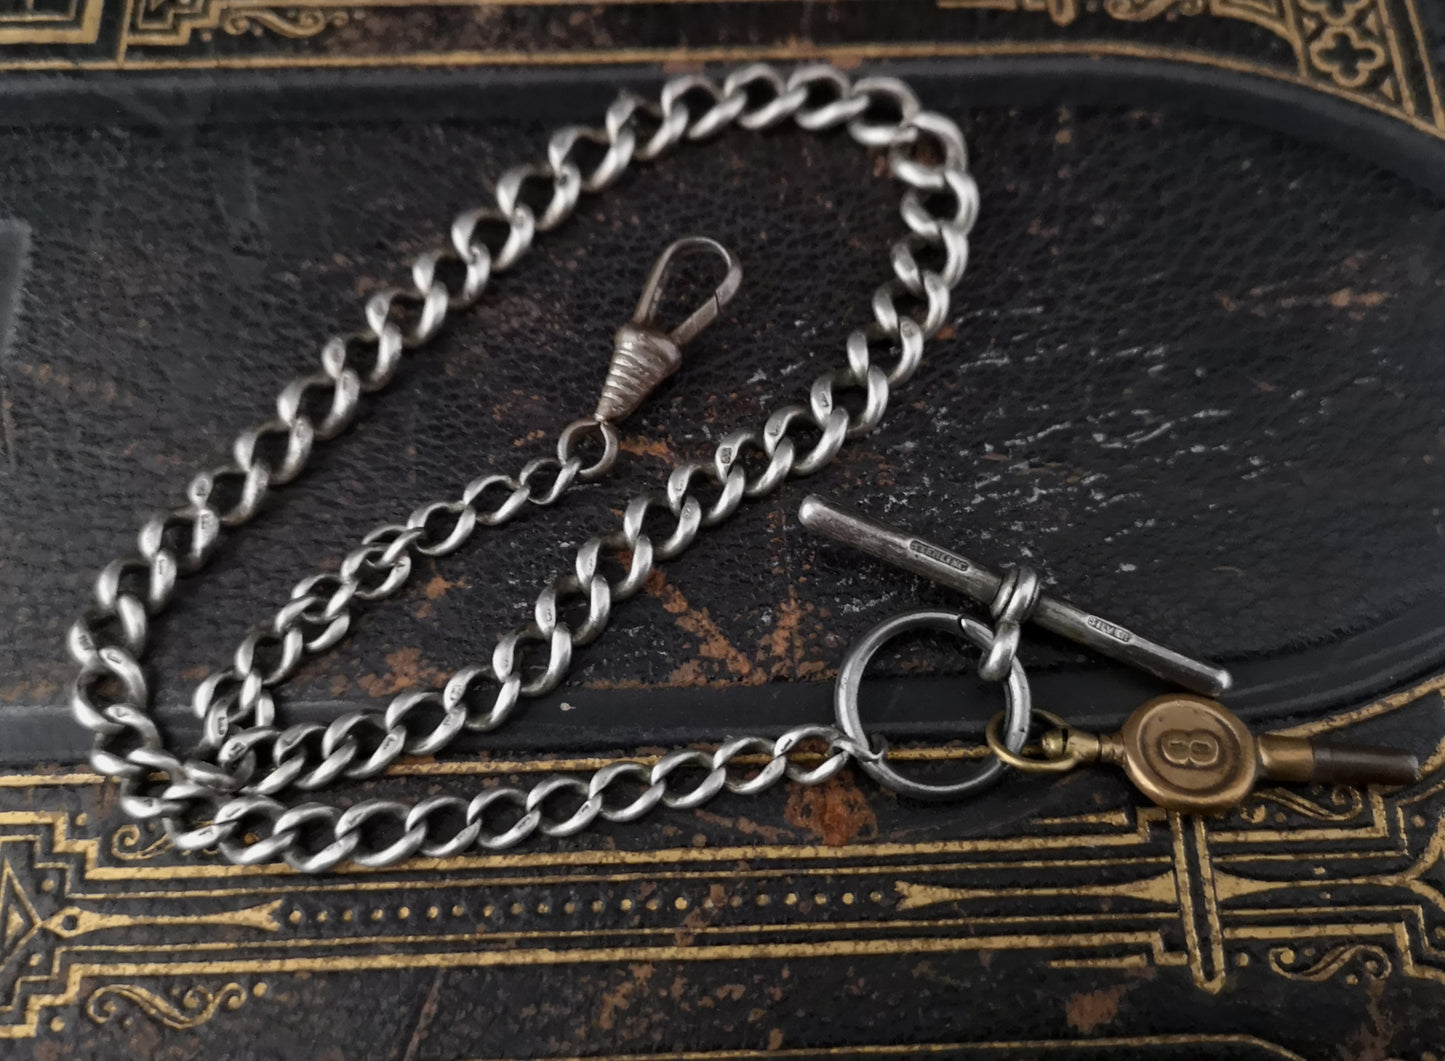 Antique Victorian silver albert chain, watch chain